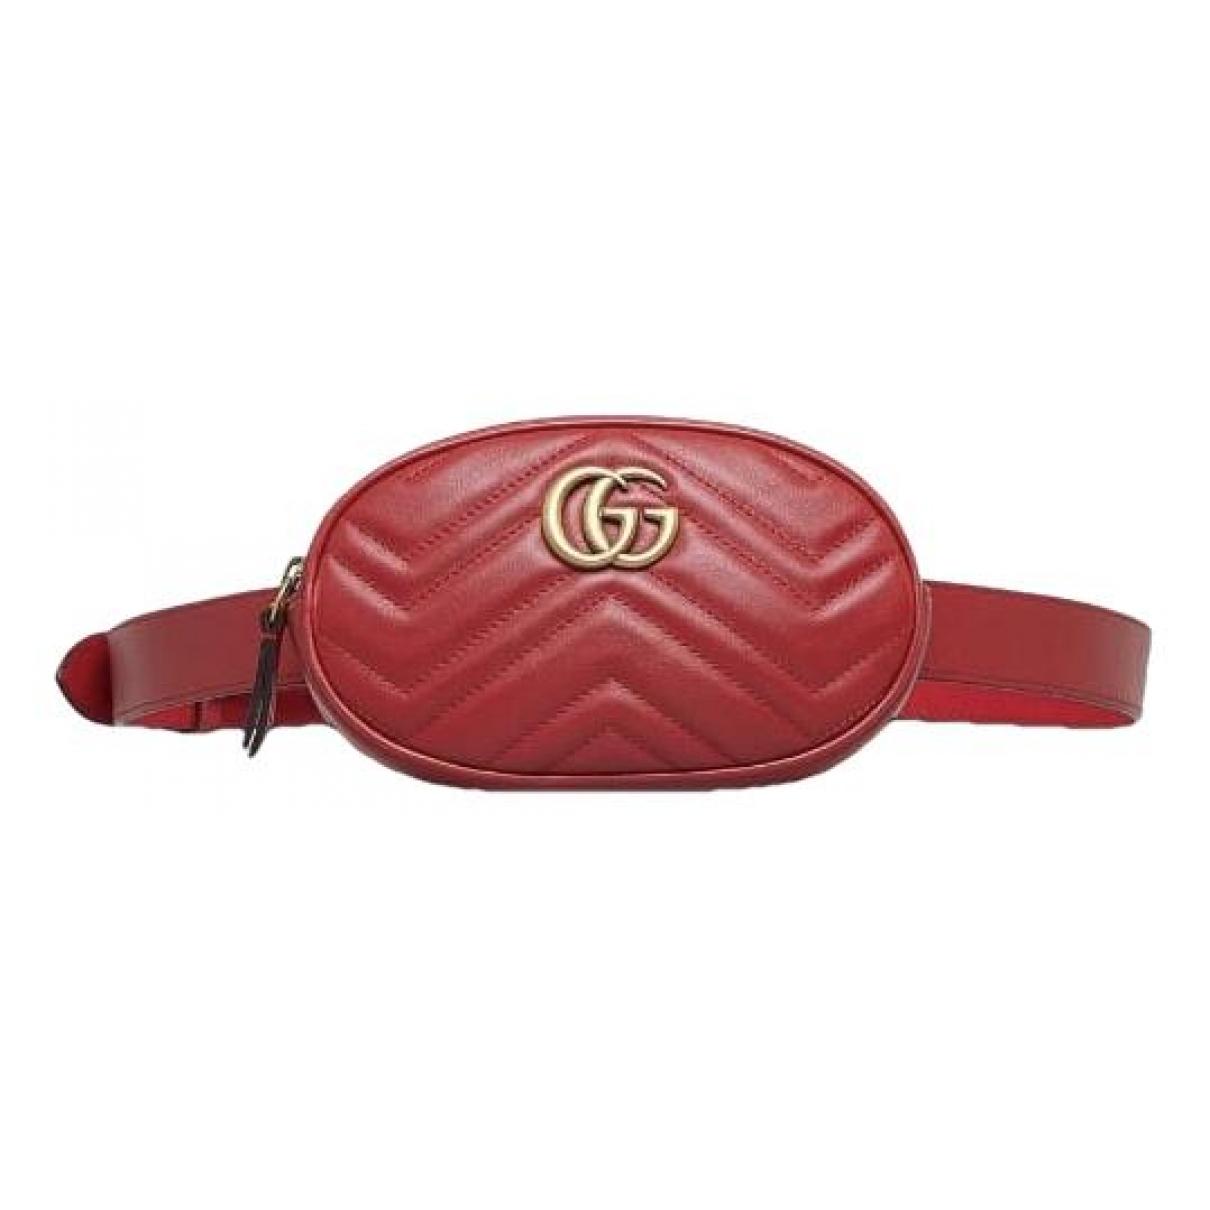 GG Marmont Oval leather handbag - 1